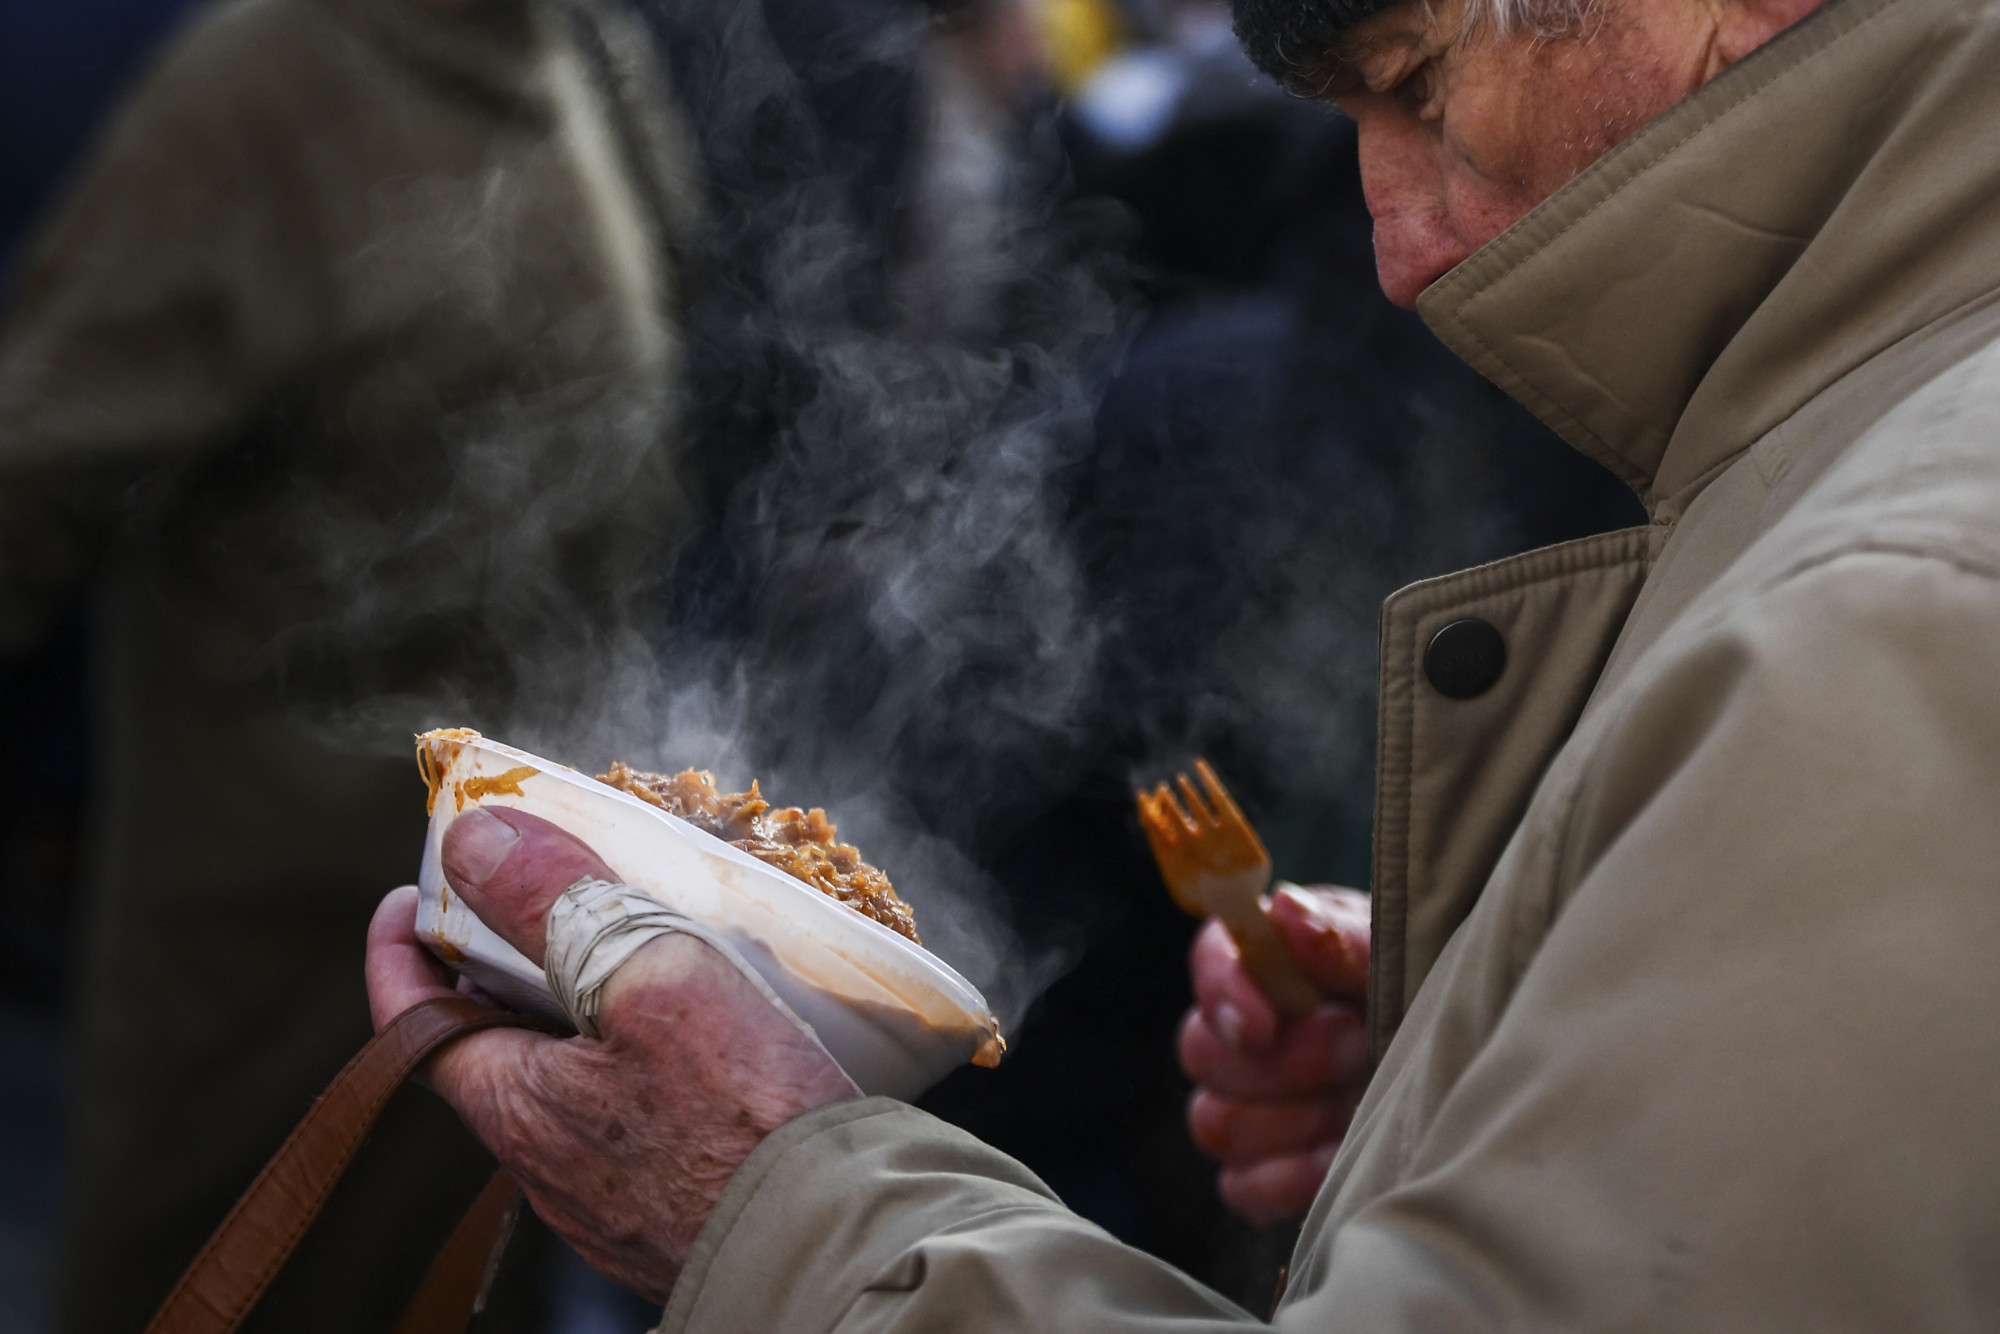 A hajléktalanok több mint fele alig 30 000 forintból tengődik havonta, ötödük rendszeresen éhezik